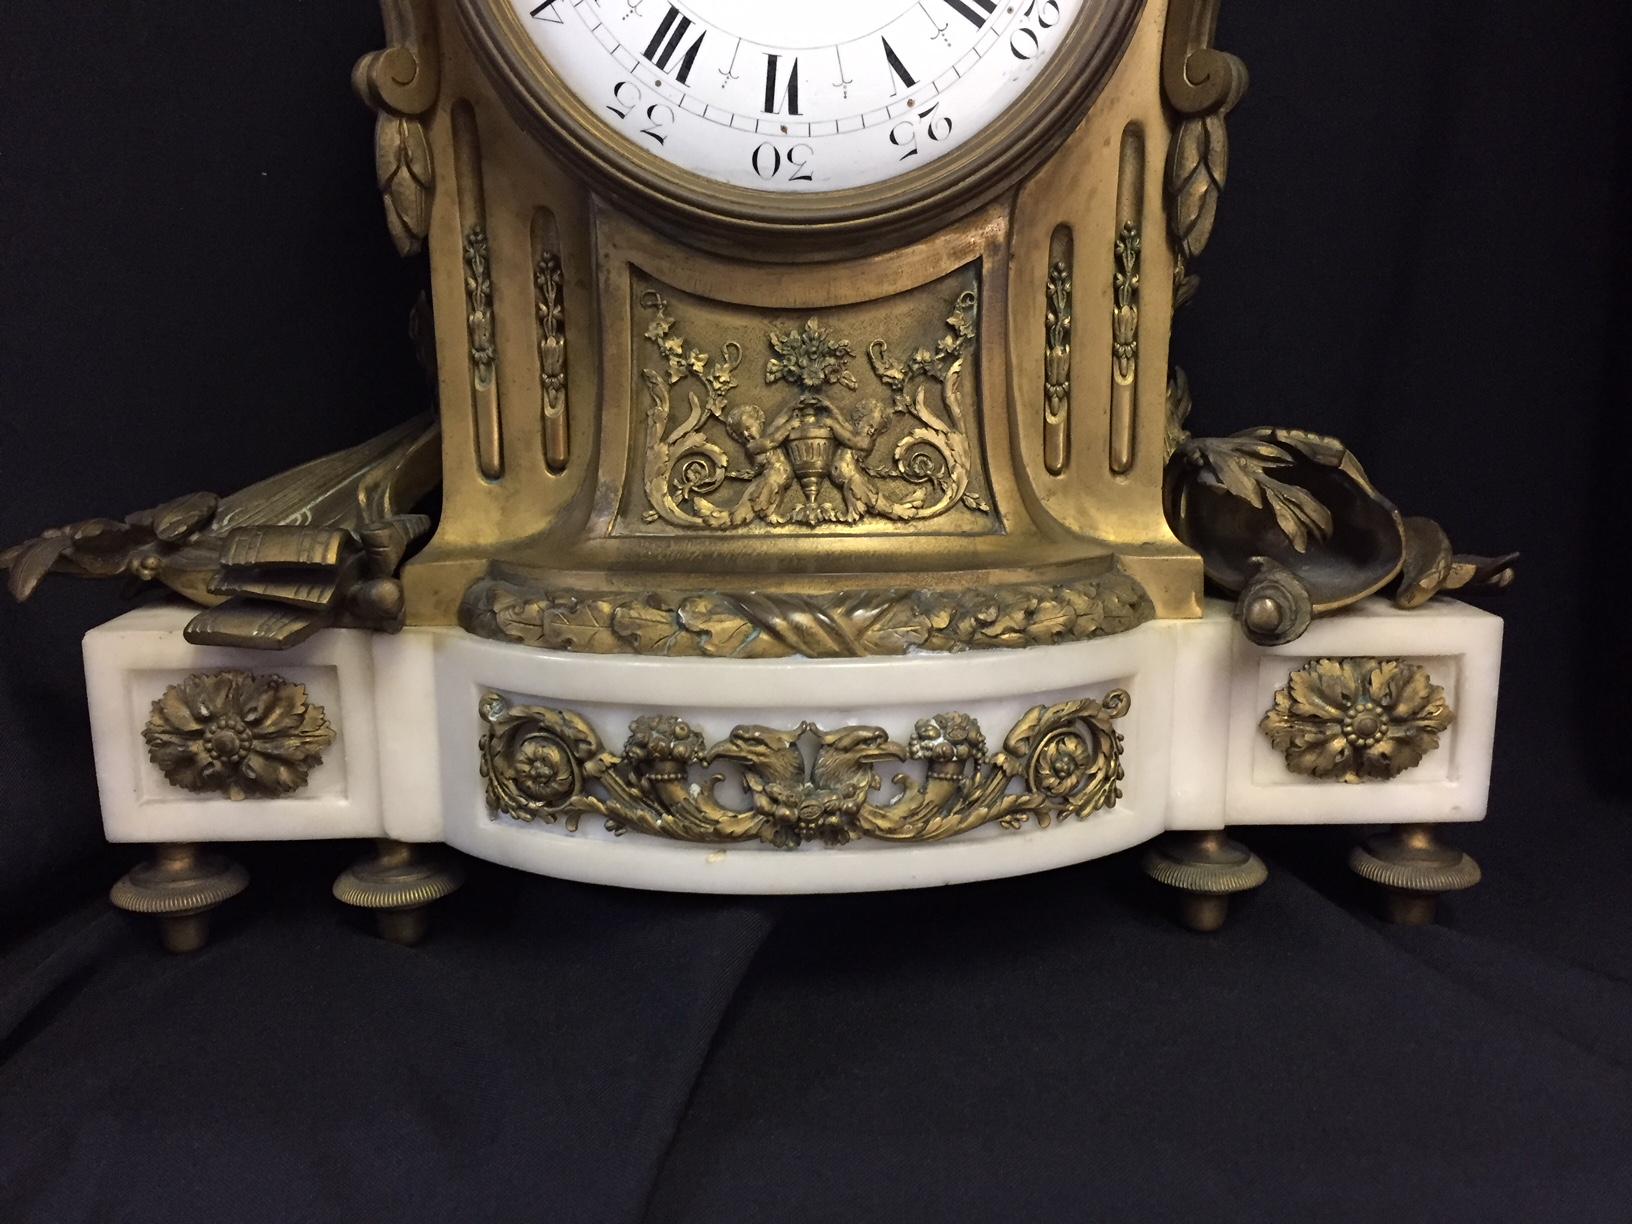 Bemerkenswerte Uhr aus weißem Marmor mit Liebesvögeln in Ormolu aus dem 19. Jahrhundert im französischen Louis-XVI-Stil.
Wiederverkauft von Tiffany. 

Die Uhr ist mit zwei sich küssenden Liebesvögeln zwischen Laub und Blumengirlanden mit einer